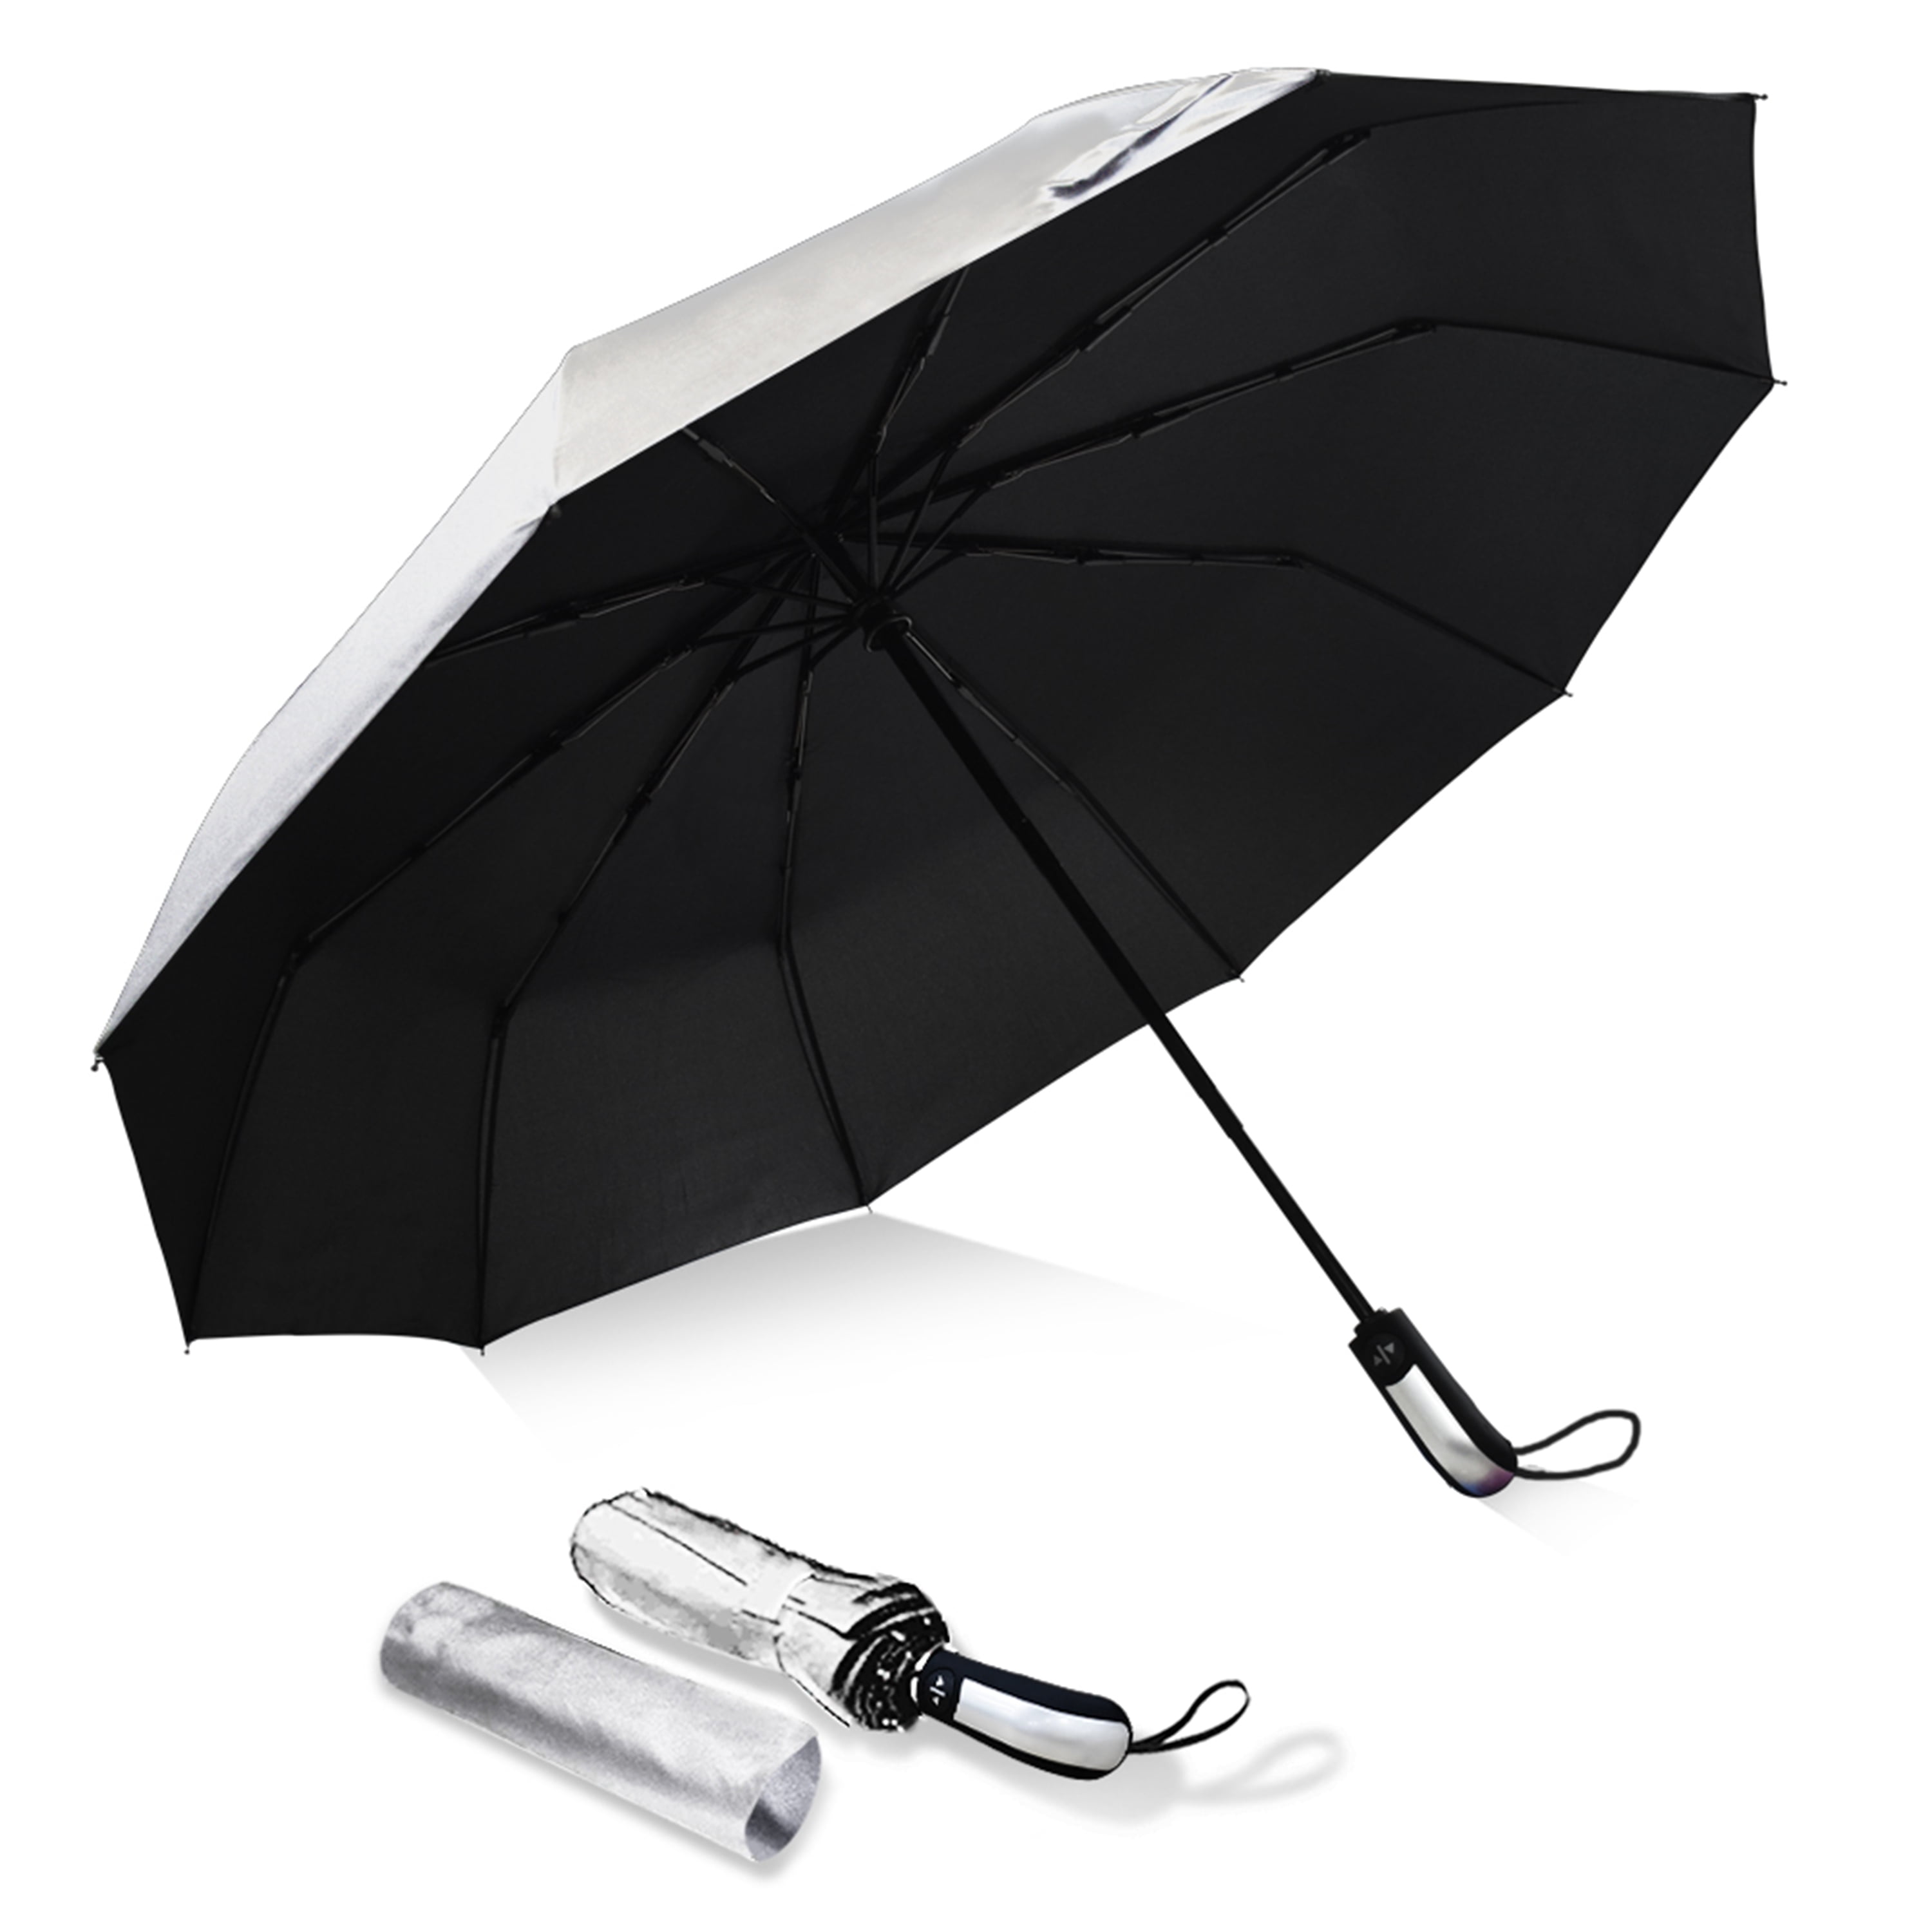 Umbrella 10 Ribs Travel Umbrella, Automatic Umbrella, Folding Umbrellas-Silver -